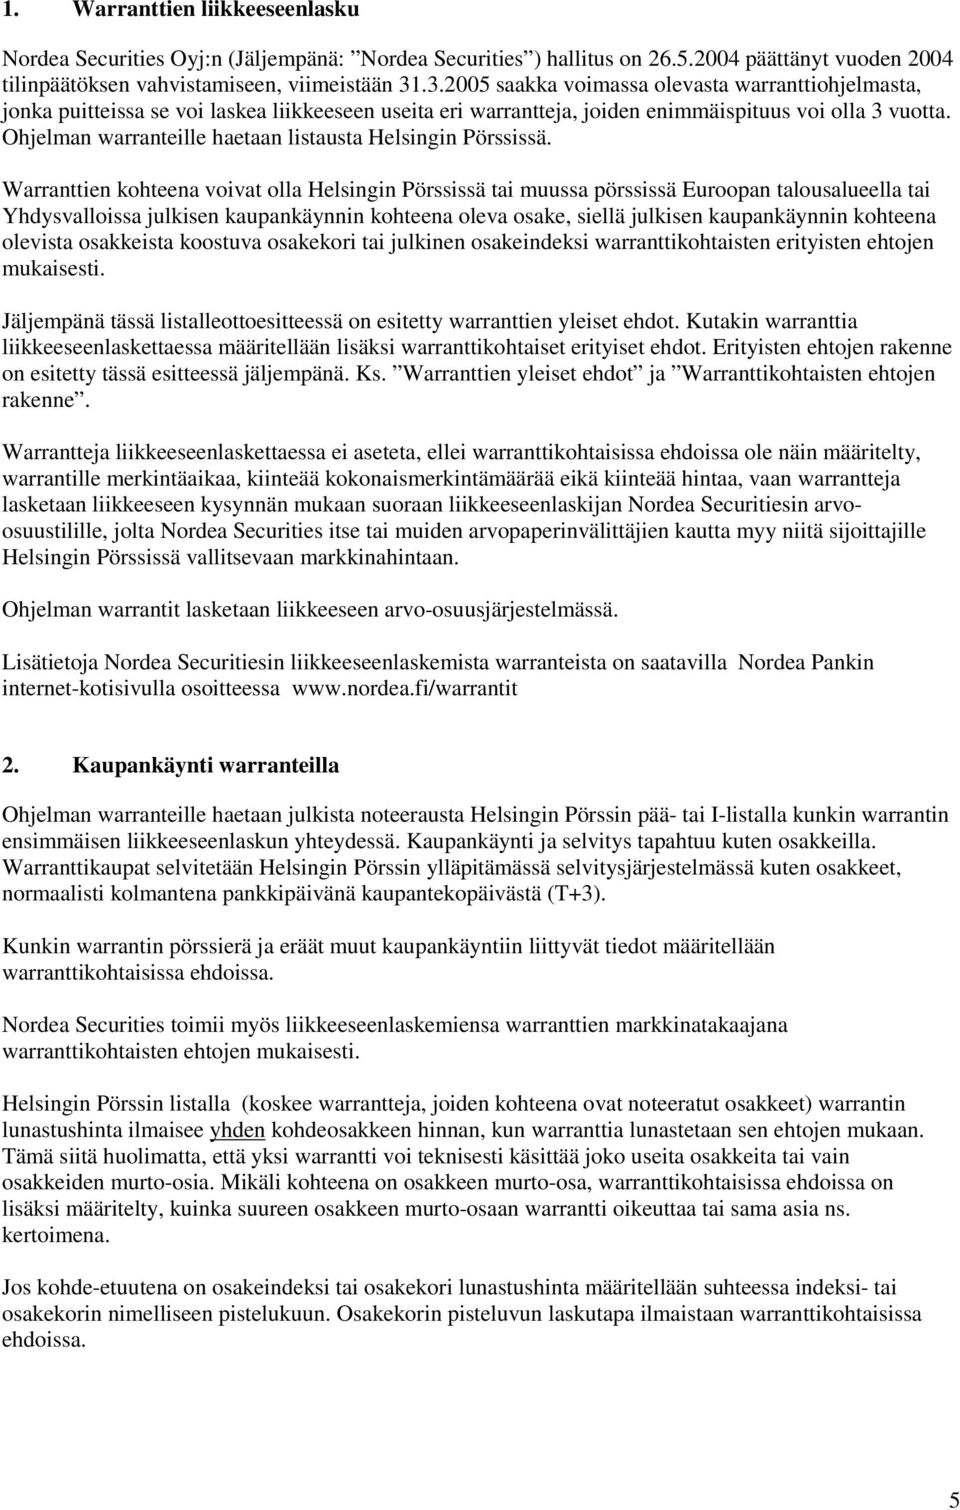 Ohjelman warranteille haetaan listausta Helsingin Pörssissä.